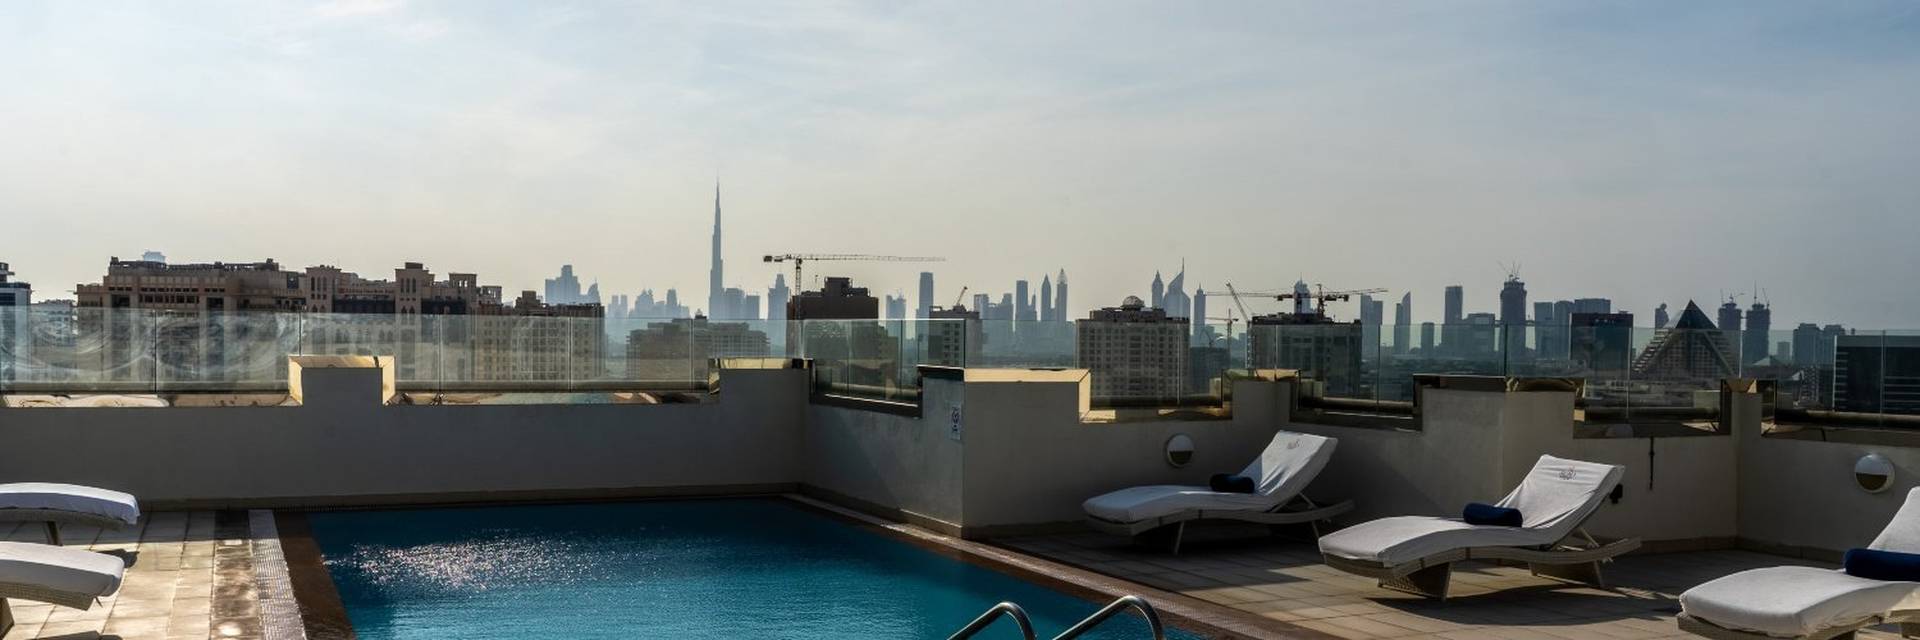 خريطة سها بارك الفندقية شقق دبي